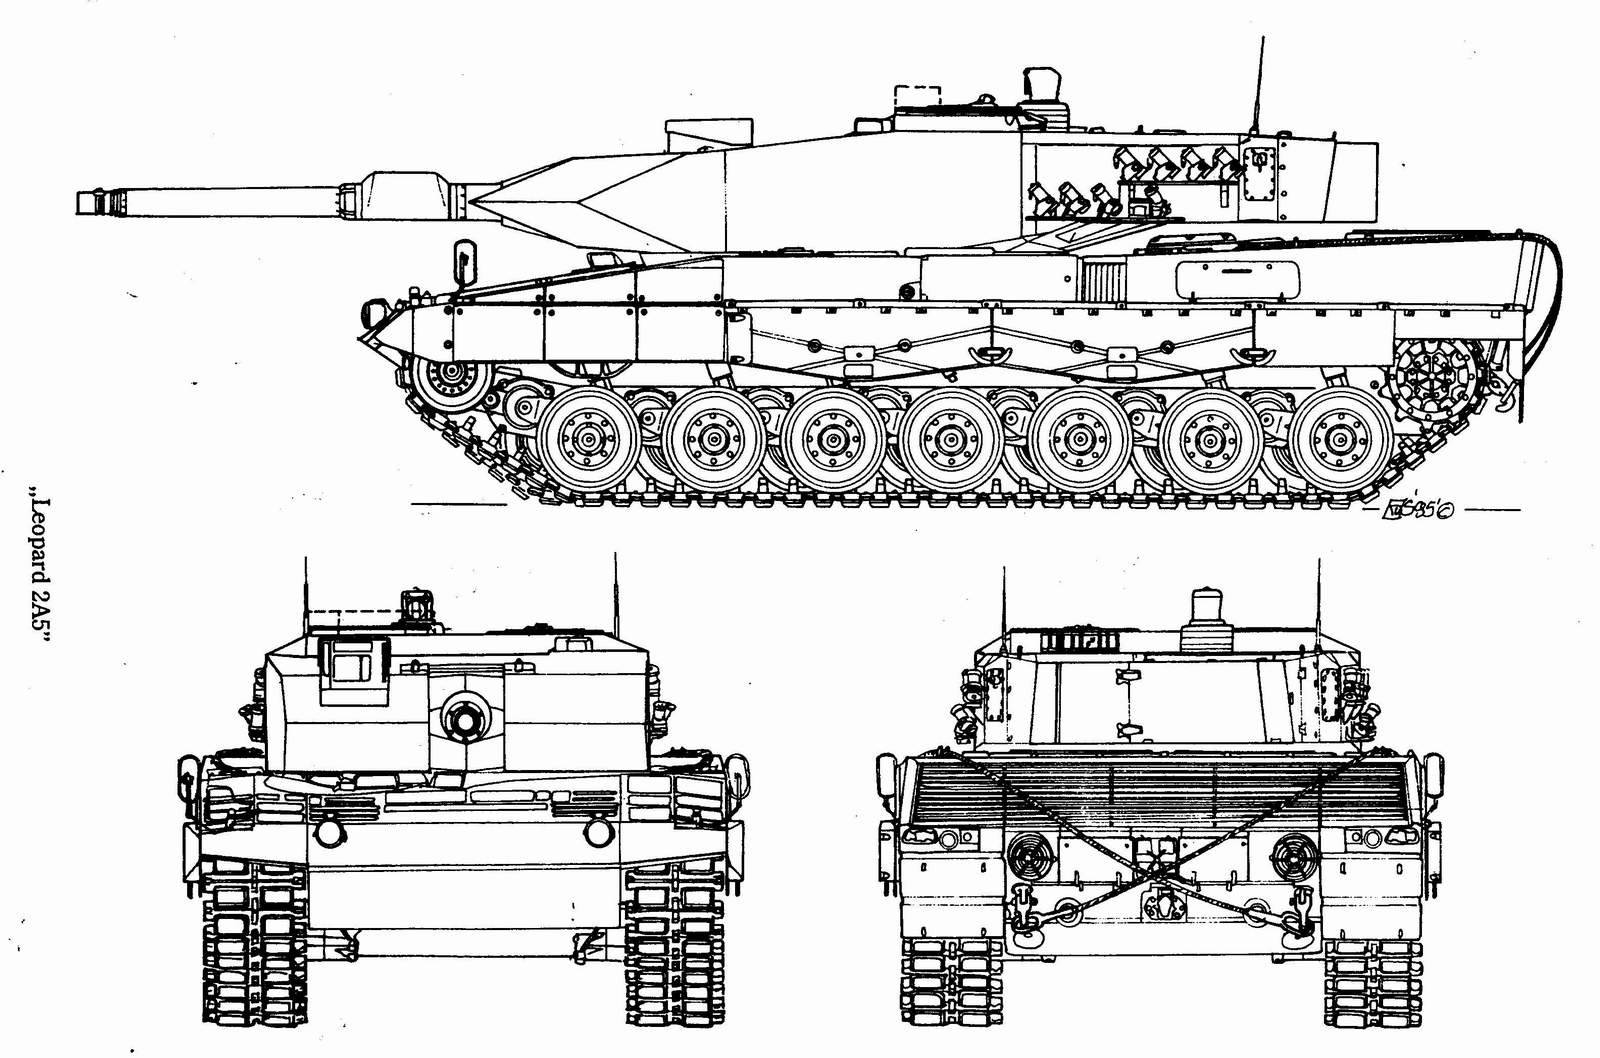 Леопард 2 (А1, А2, А3, А4, А5, А6, А7) - немецкий танк